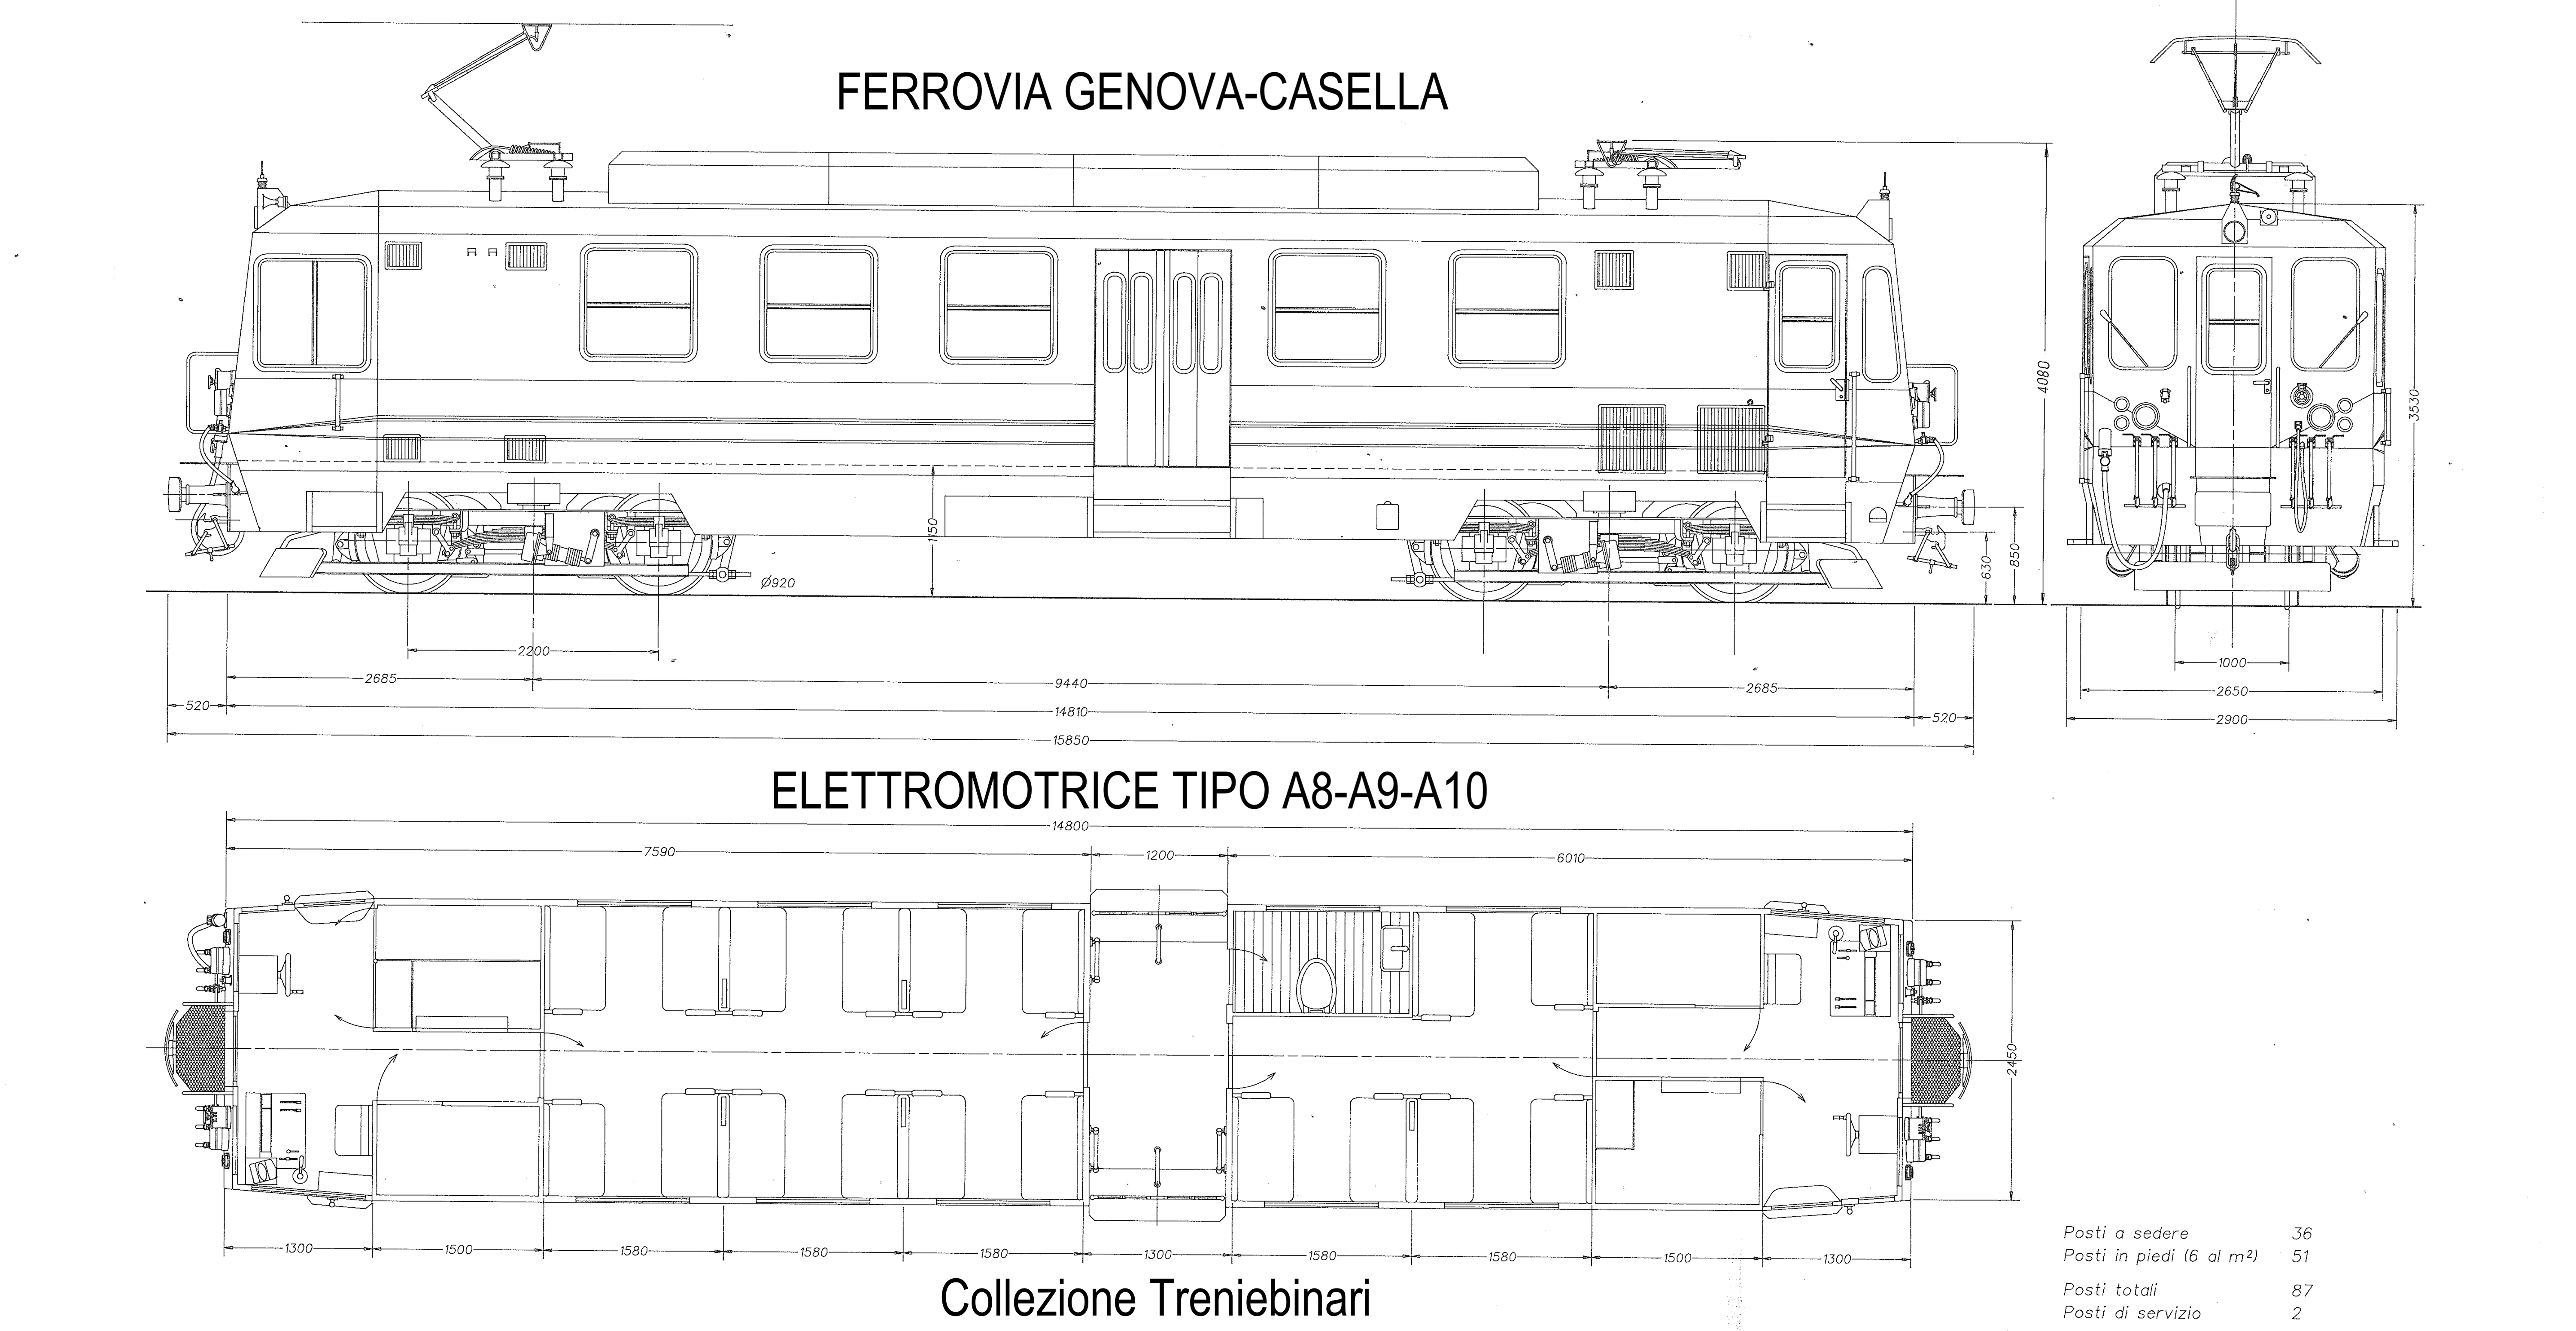 Elettromotrice FIREMA per Ferrovia Genova-Casella